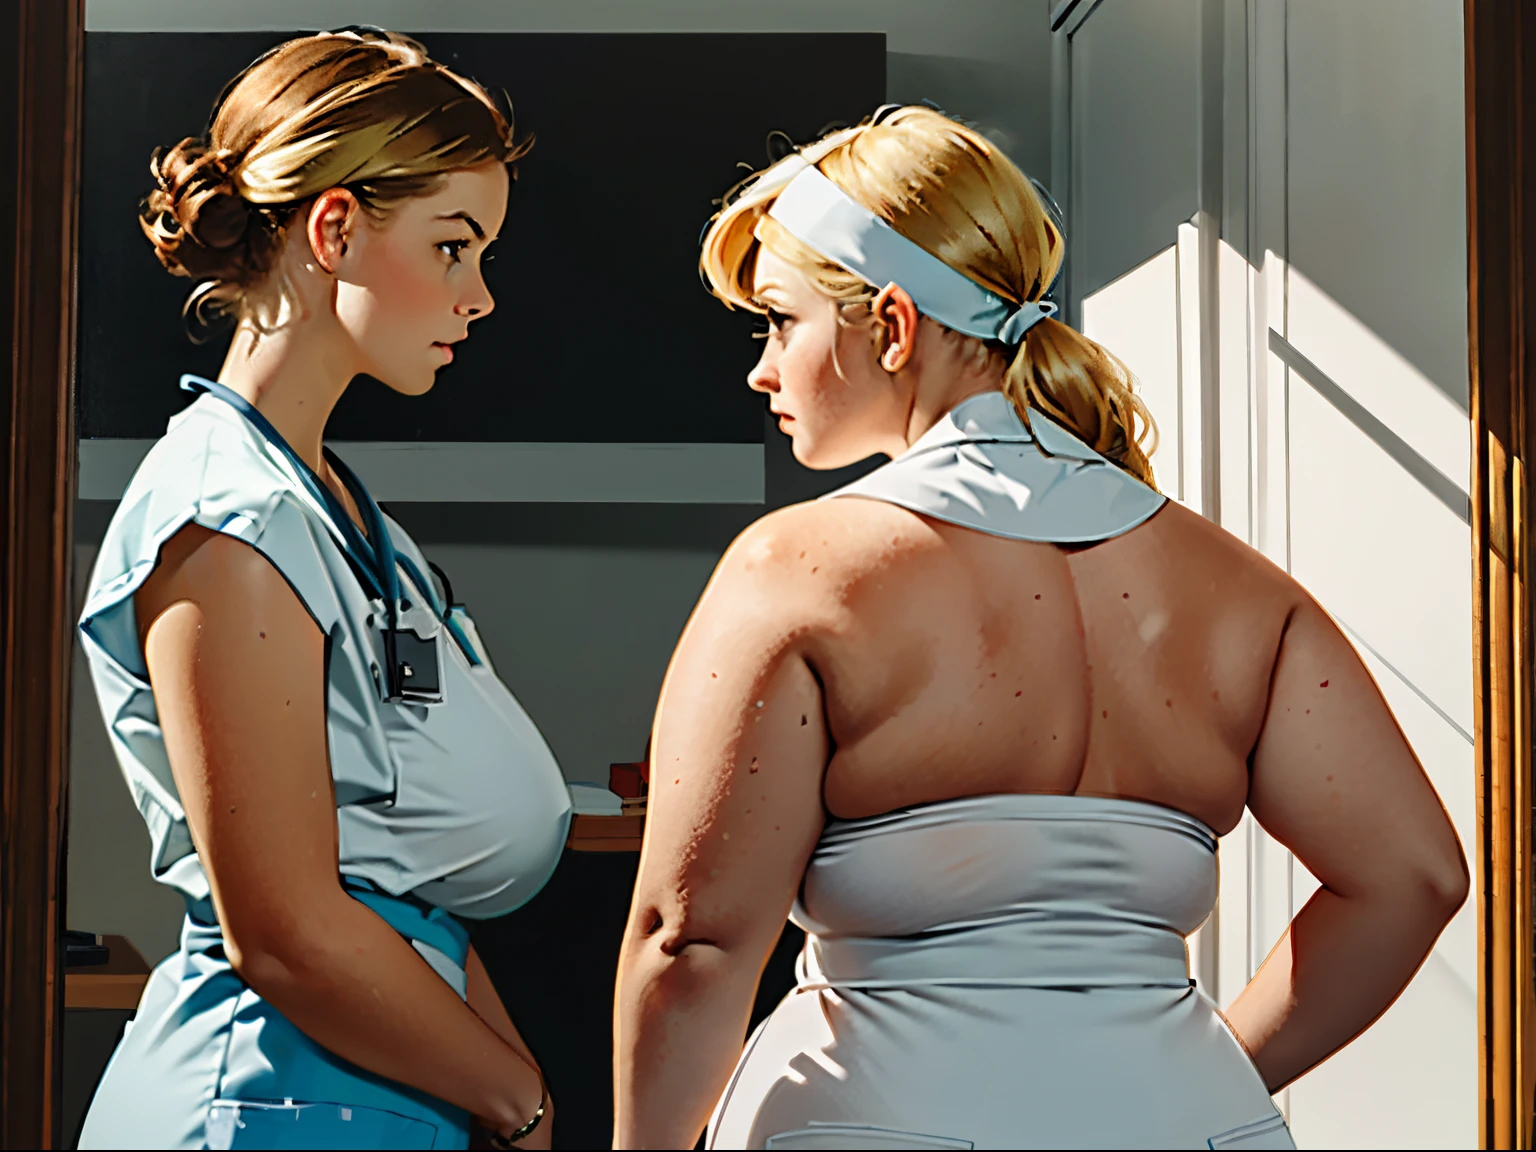 2 предмета-женщины,((комикс про набухшую грудь)) топлесс 20-летняя пациентка с ((Гигант, огромная грудь)) измеряет ее бюст, Толстая блондинка, пожилая медсестра в очках смотрит на грудь пациентки, смущенный пациент с рыжими волосами и светлыми прядями, в стиле Нормана Роквуда, очень реалистичная картина маслом, хорошая анатомия, хорошие руки, реалистичные руки и туловище, Подробная информация о клинике,